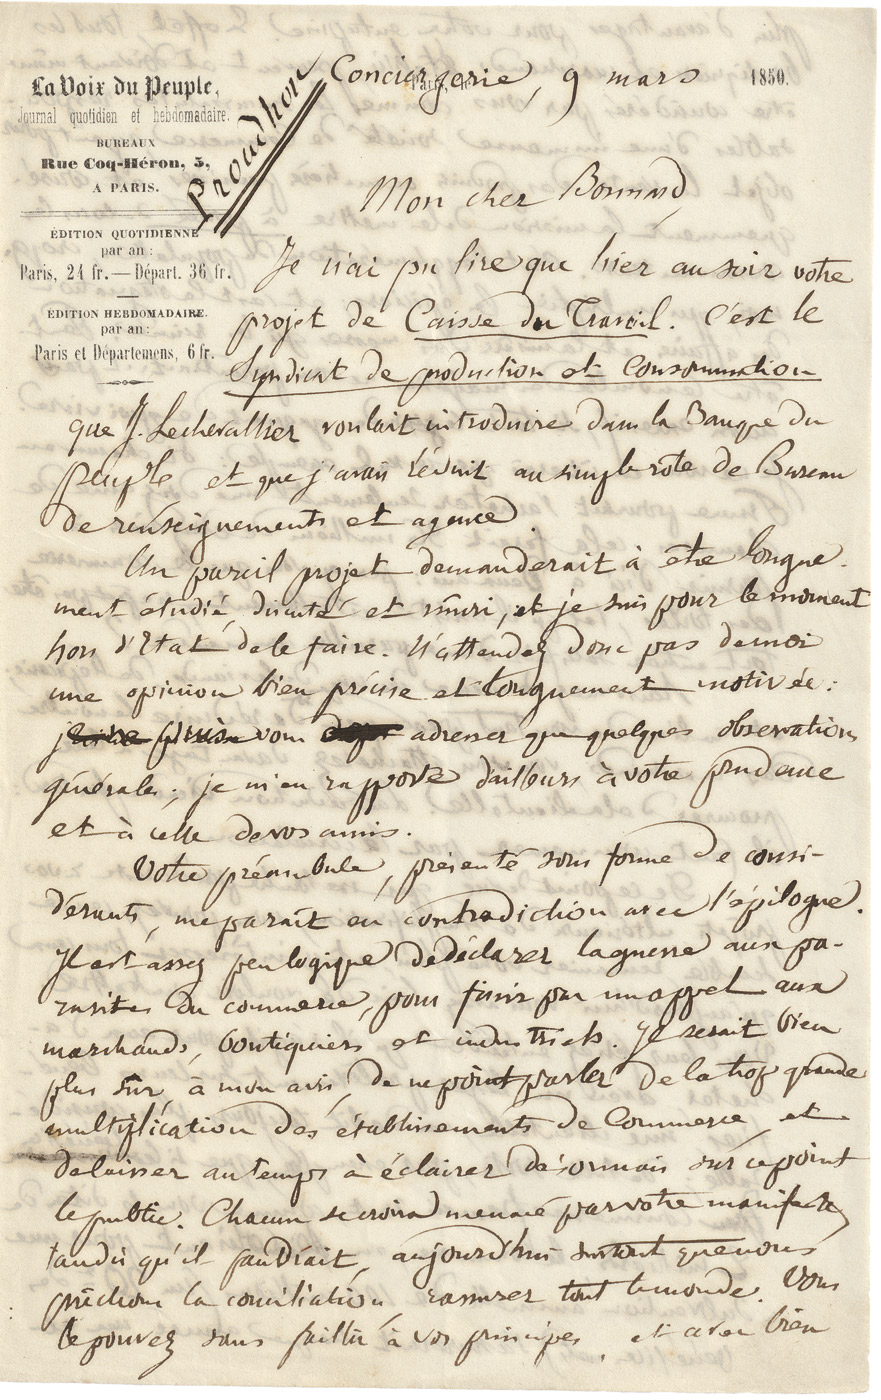 Lot 2704, Auction  115, Proudhon, Pierre-Joseph, Brief 1850 an Arthur de Bonnard